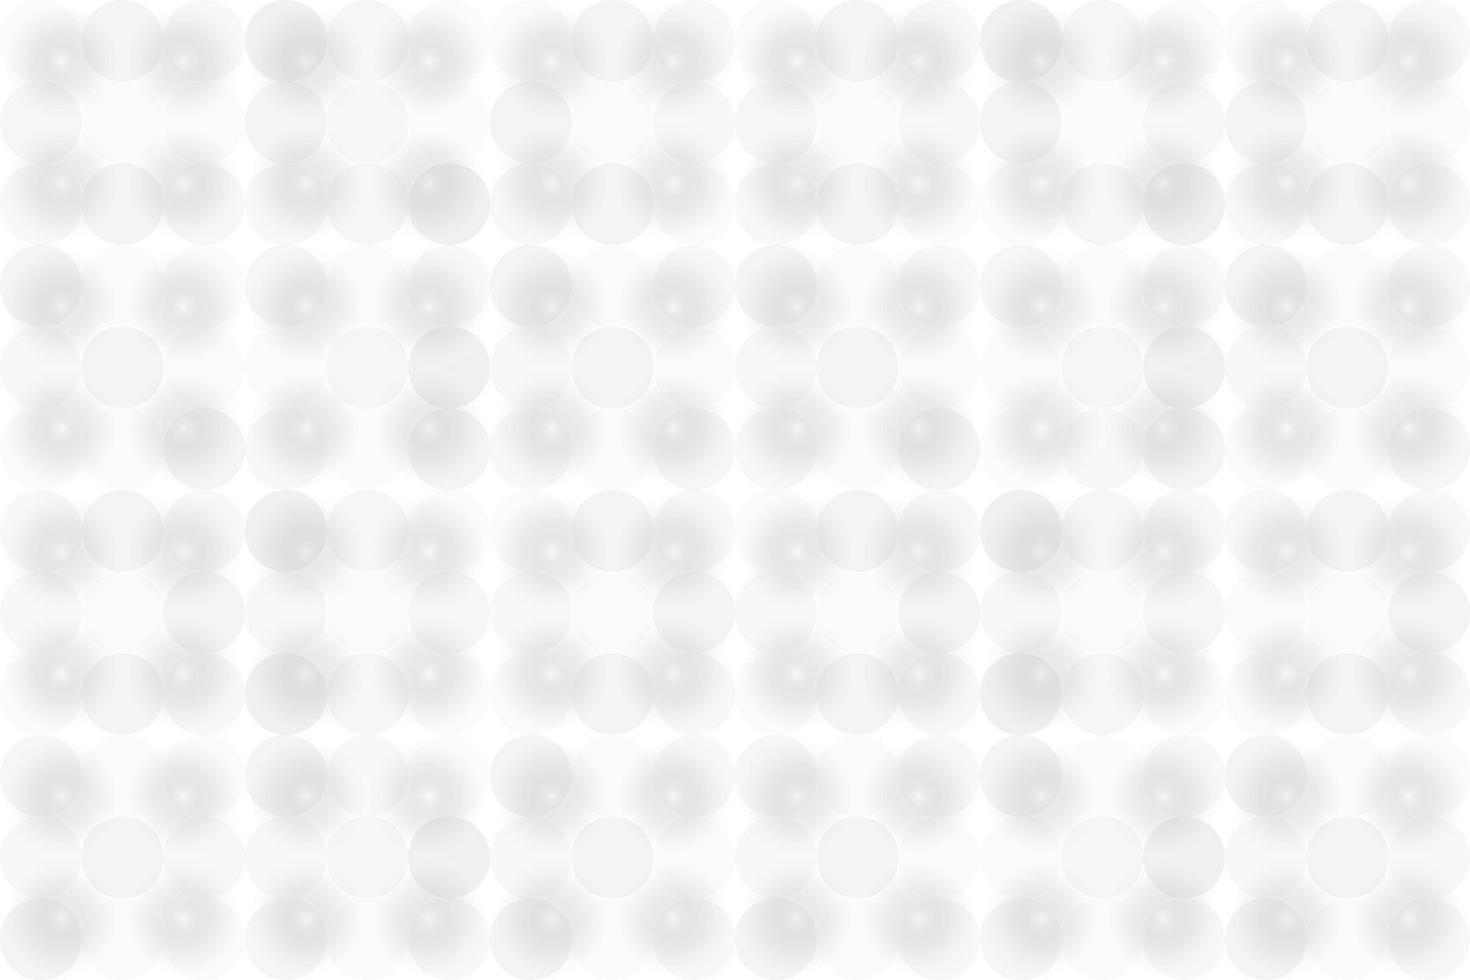 color blanco y gris abstracto, fondo de diseño moderno con forma geométrica. ilustración vectorial vector